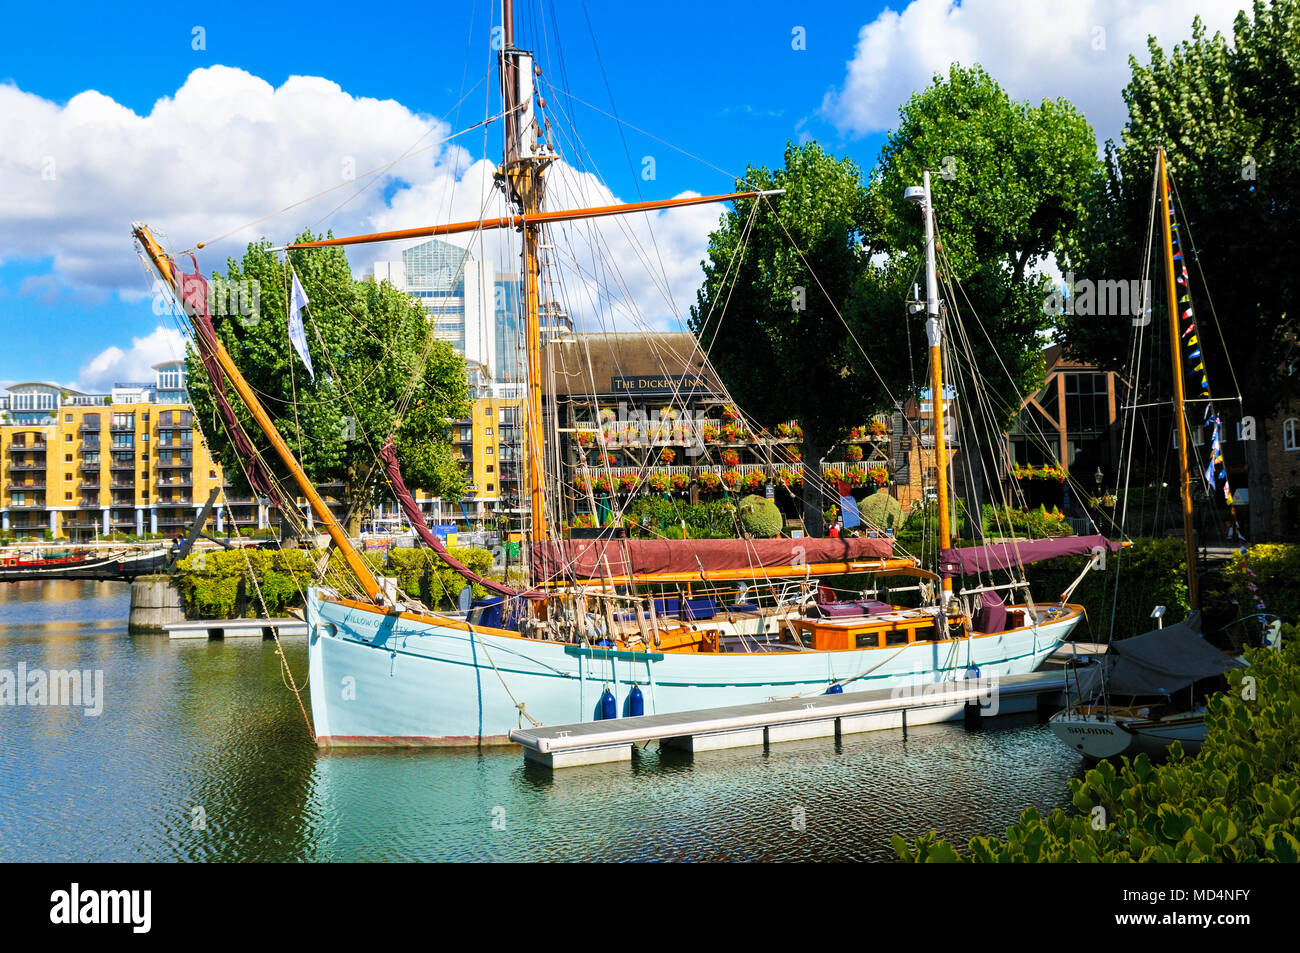 "Willow di Harty' imbarcazione a vela ormeggiata in St Katharine Docks, Tower Hamlets, London, England, Regno Unito Foto Stock